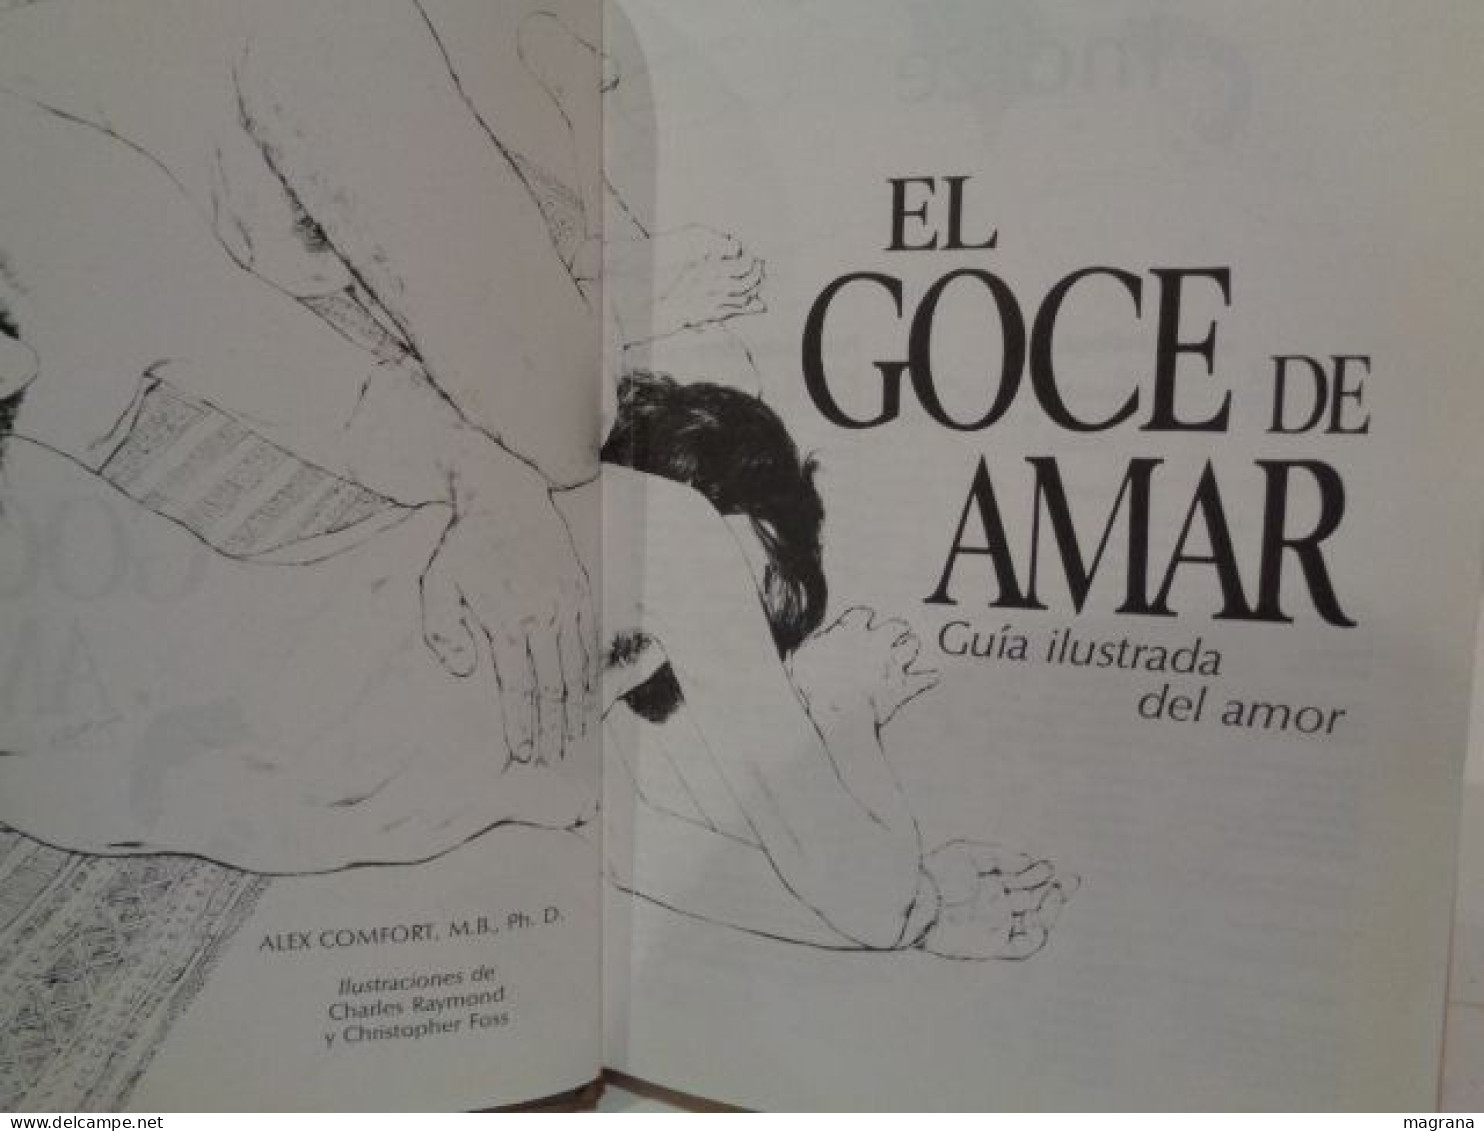 El Goce De Amar. The Joy Of Sex. Guía Ilustrada Del Amor. Dr. Alex Comfort. Editorial Circulo De Lectores. 1991. 256 Pp. - Cultural